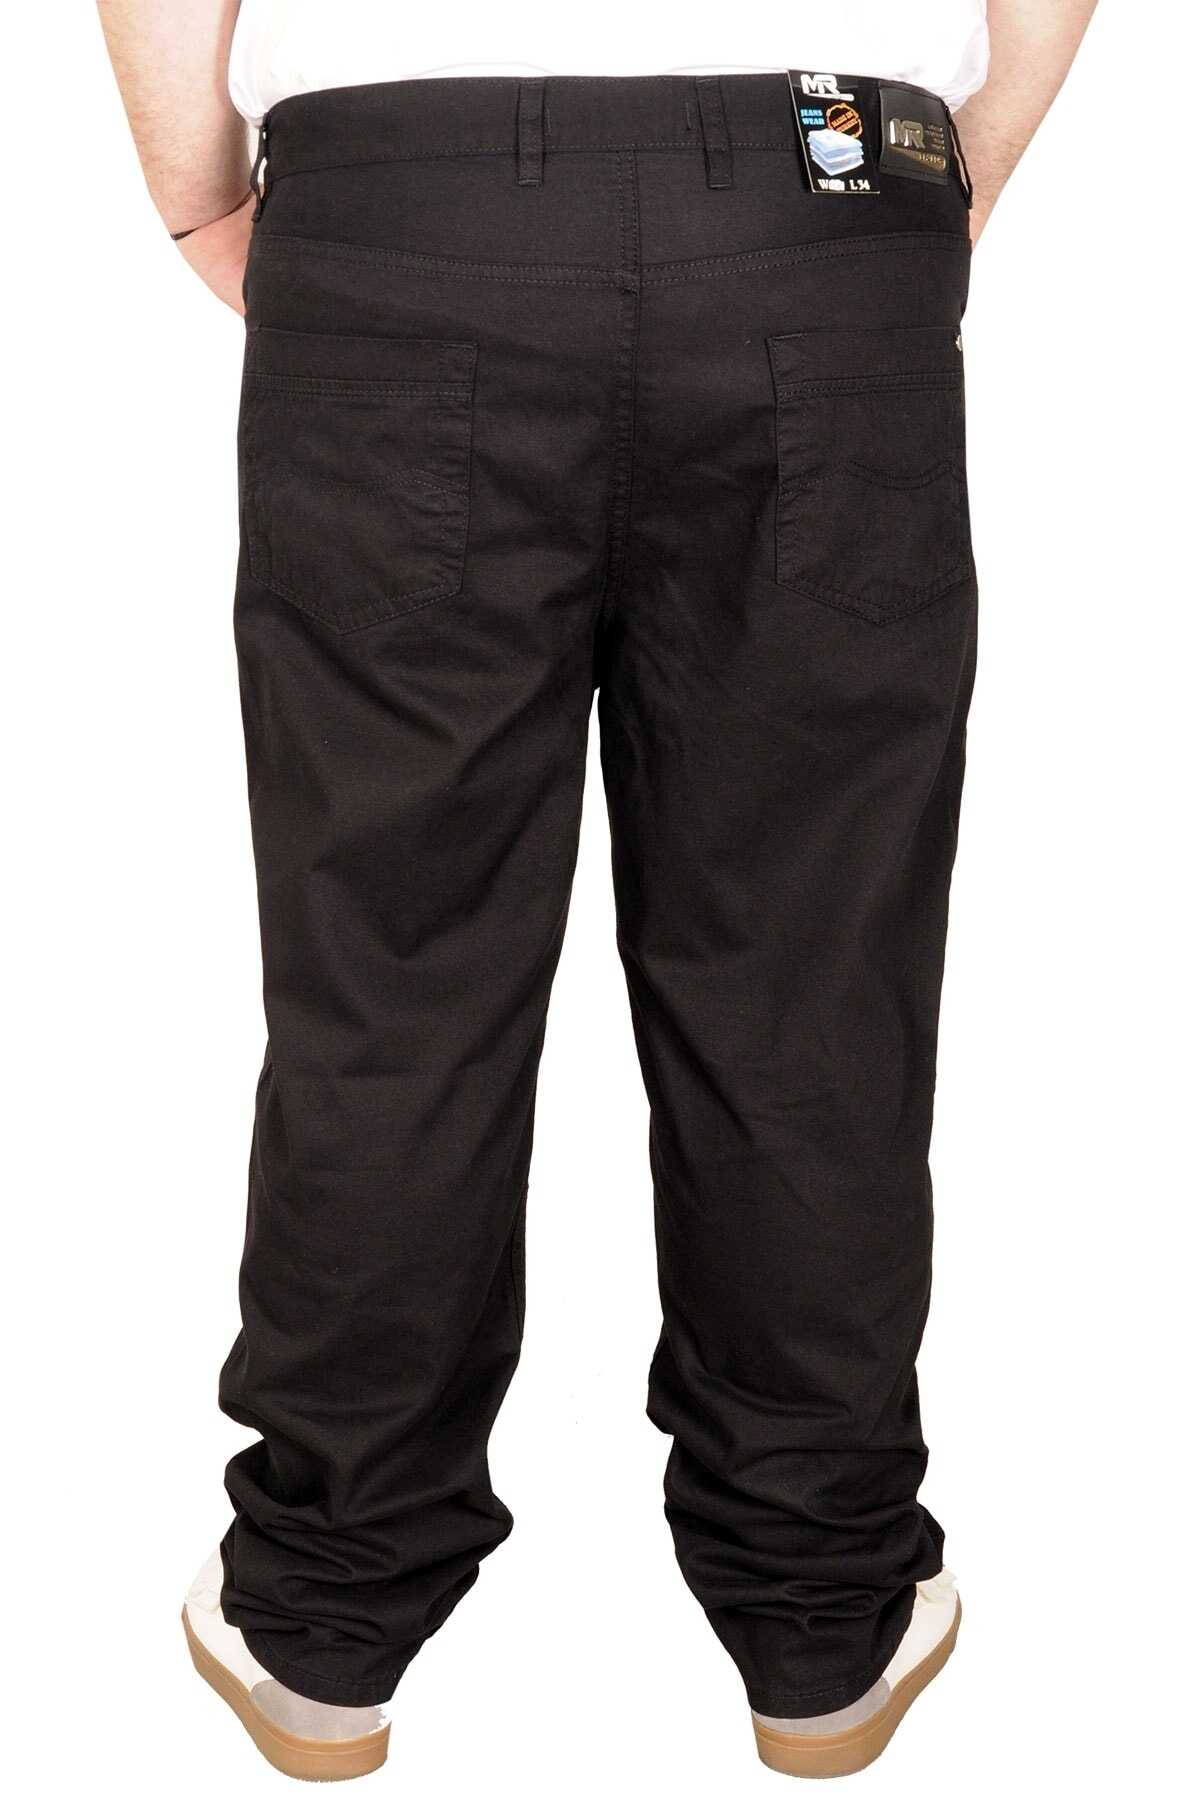 شلوار کتان سایز بزرگ جیب دار مردانه مشکی برند ModeXL 